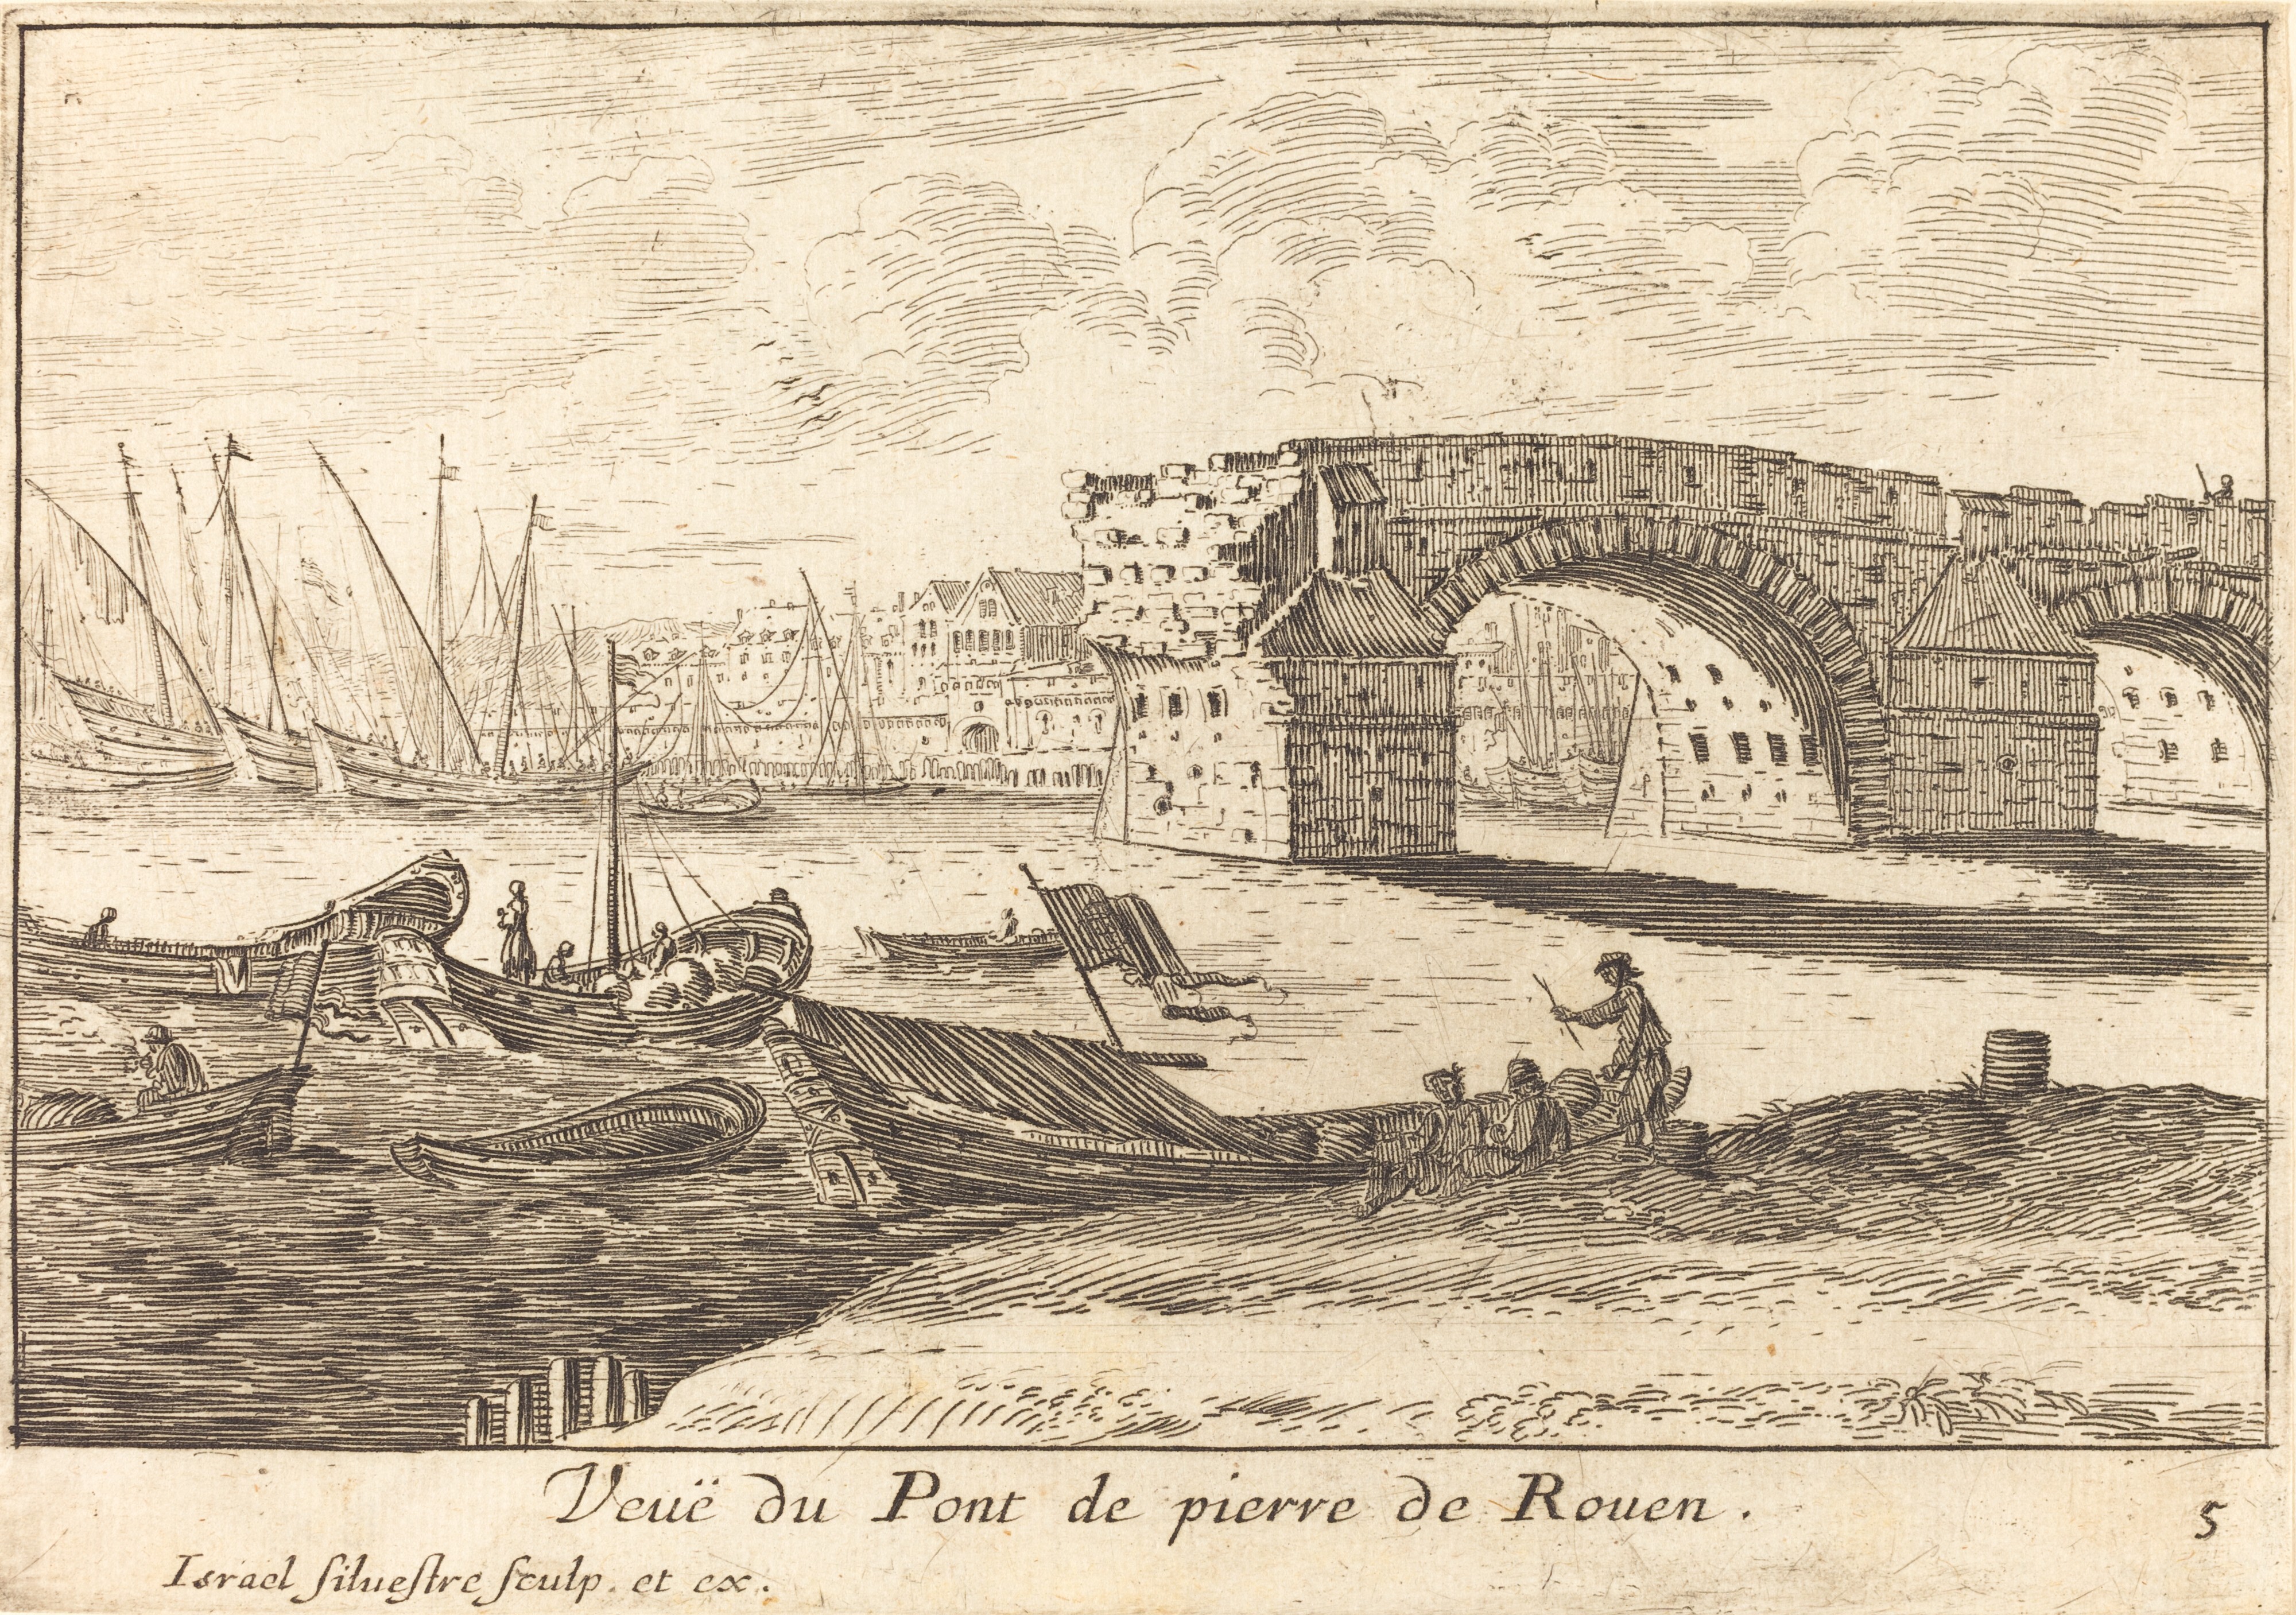 Israël Silvestre : Veuë du Pont de pierre de Rouen.